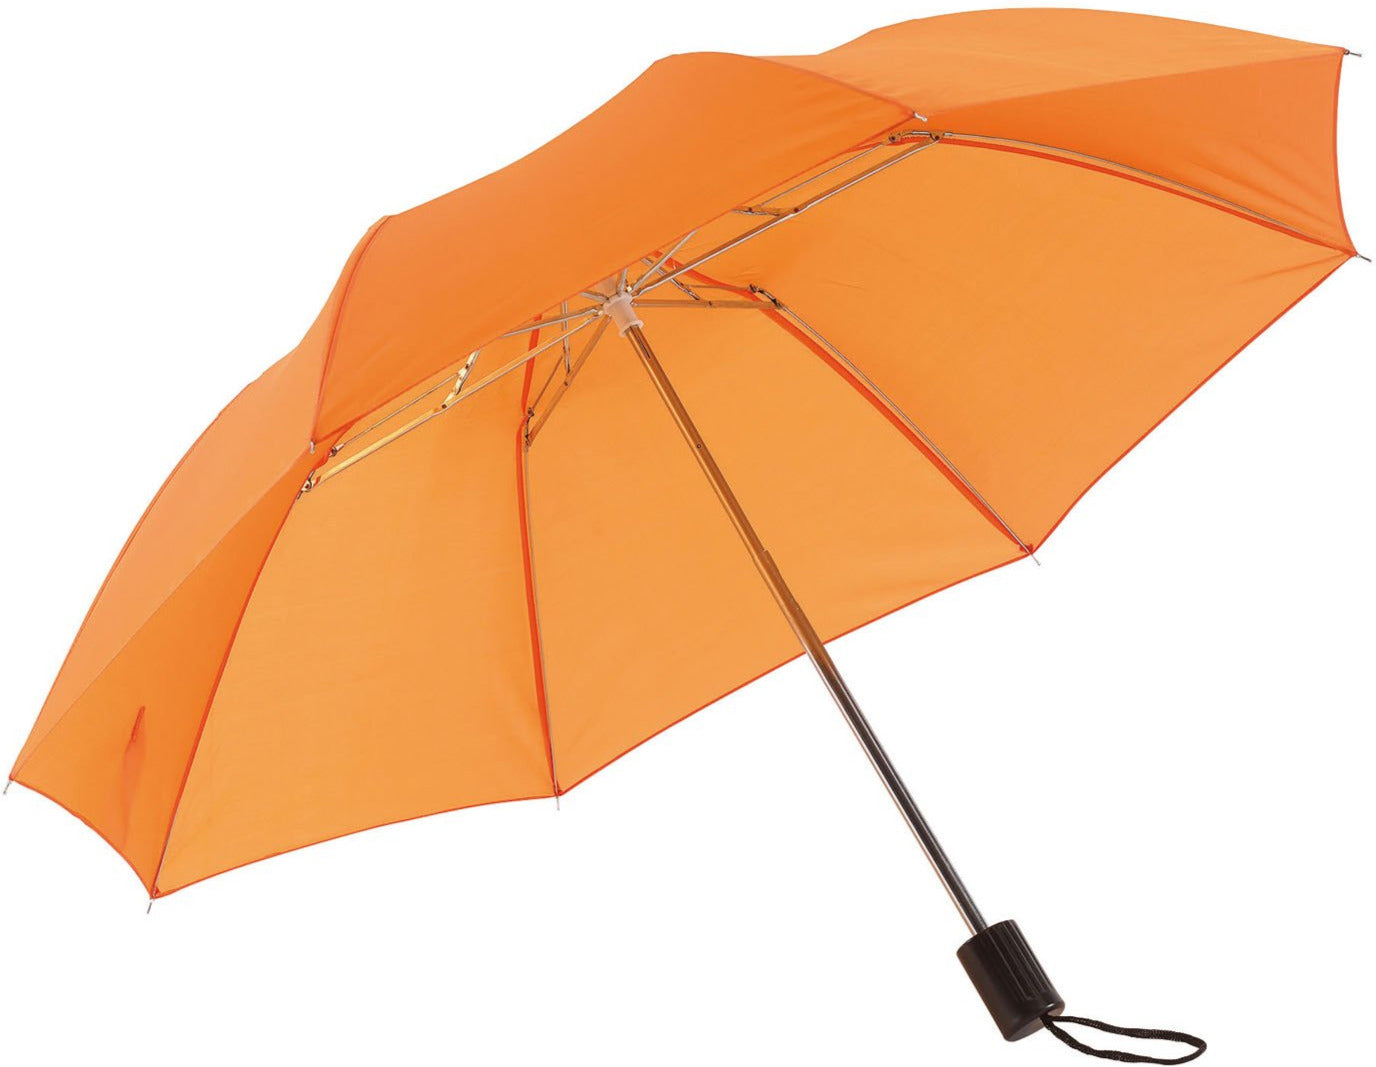 Πορτοκαλί Παιδική Ομπρέλα Βροχής, Σπαστή, Απλή, και σε πολλά χρώματα (κωδικός 01-02-0209).